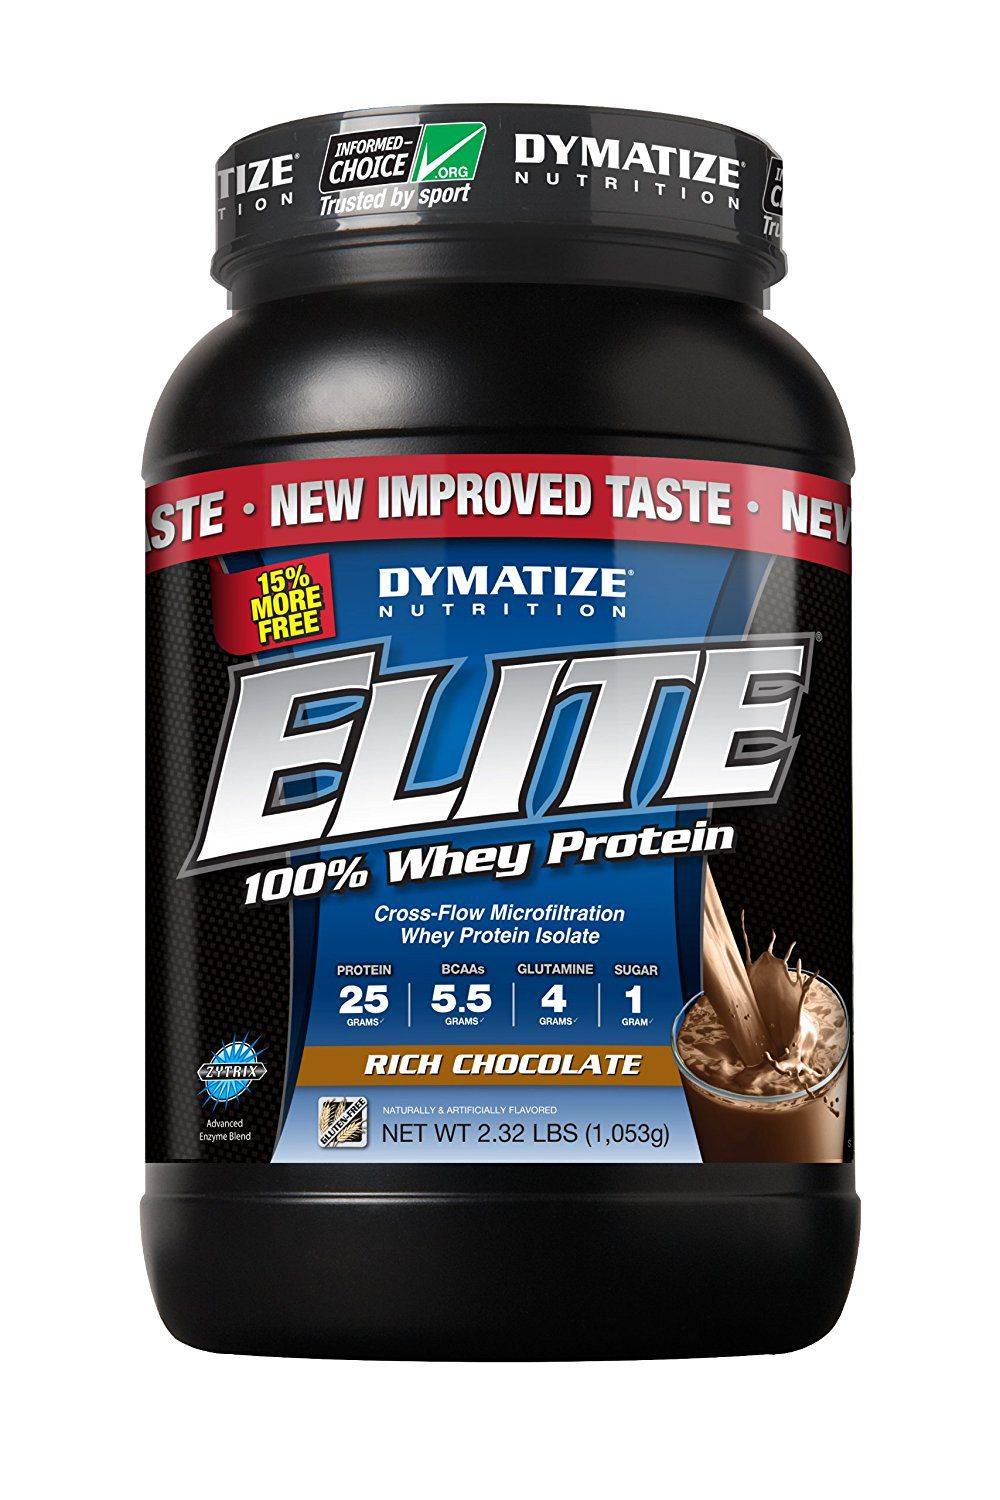 Как правильно пить протеиновый комплекс dymatize elite